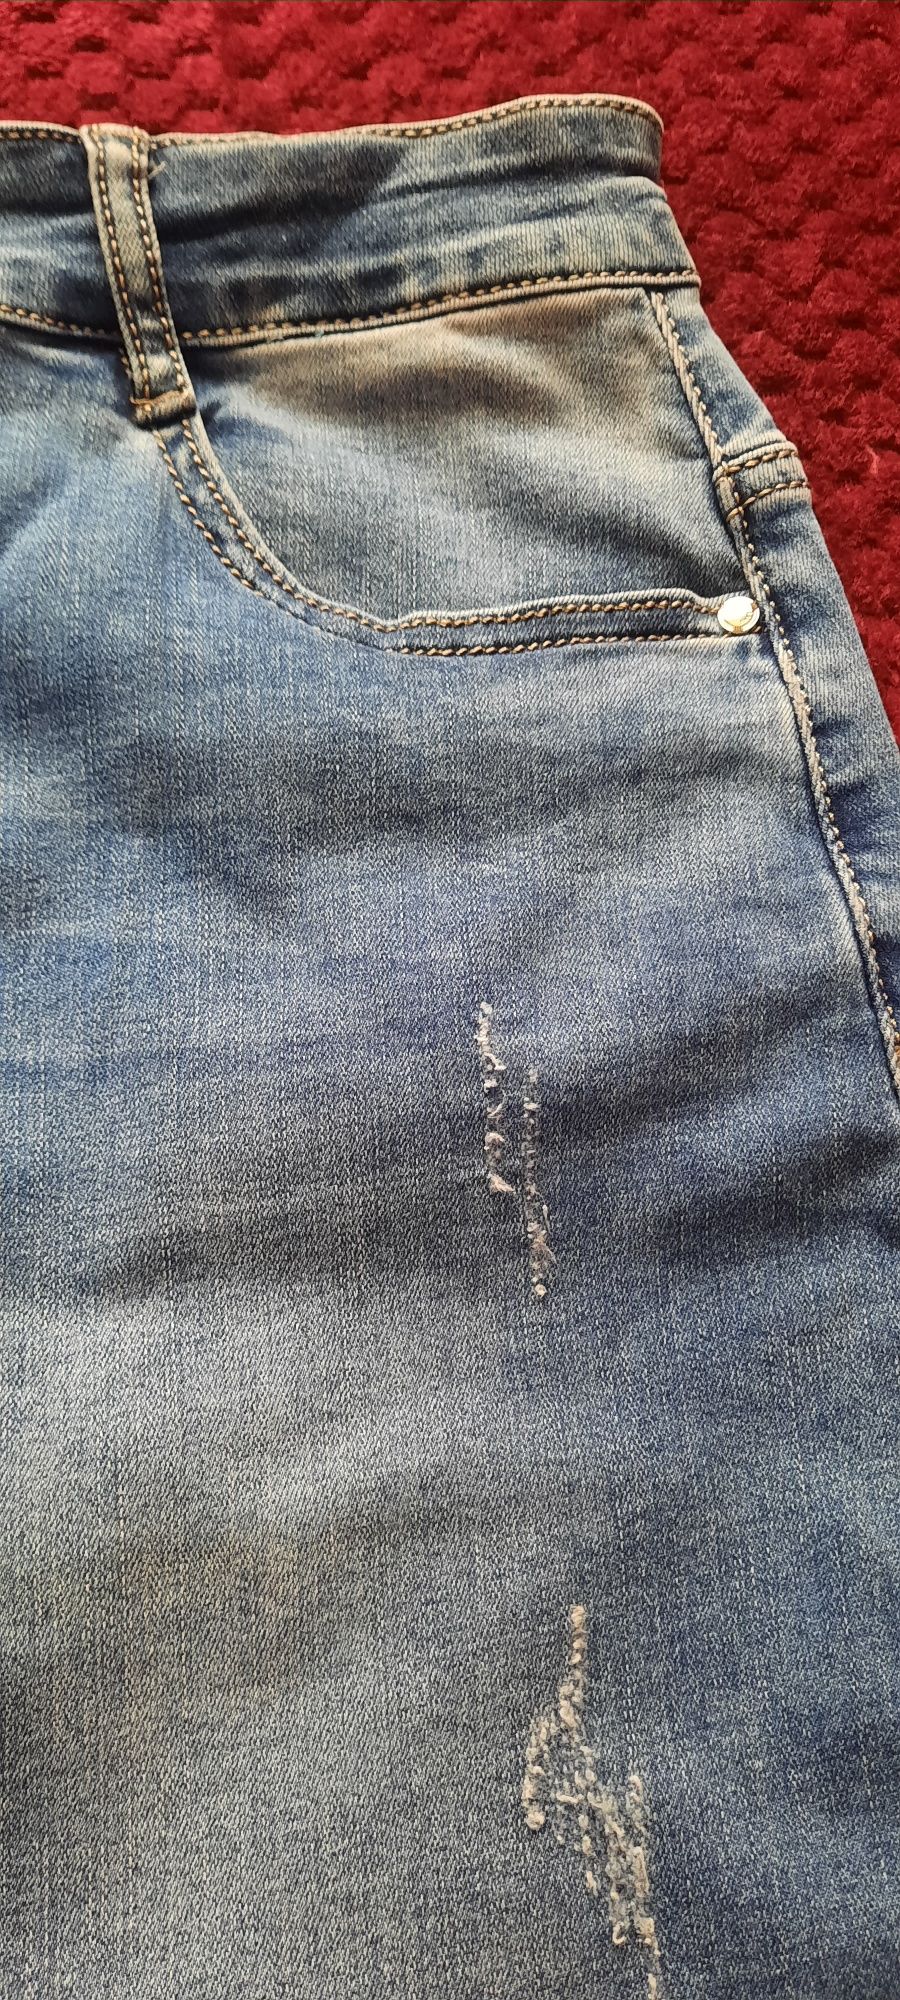 Spódnica jeans rozm l/xl